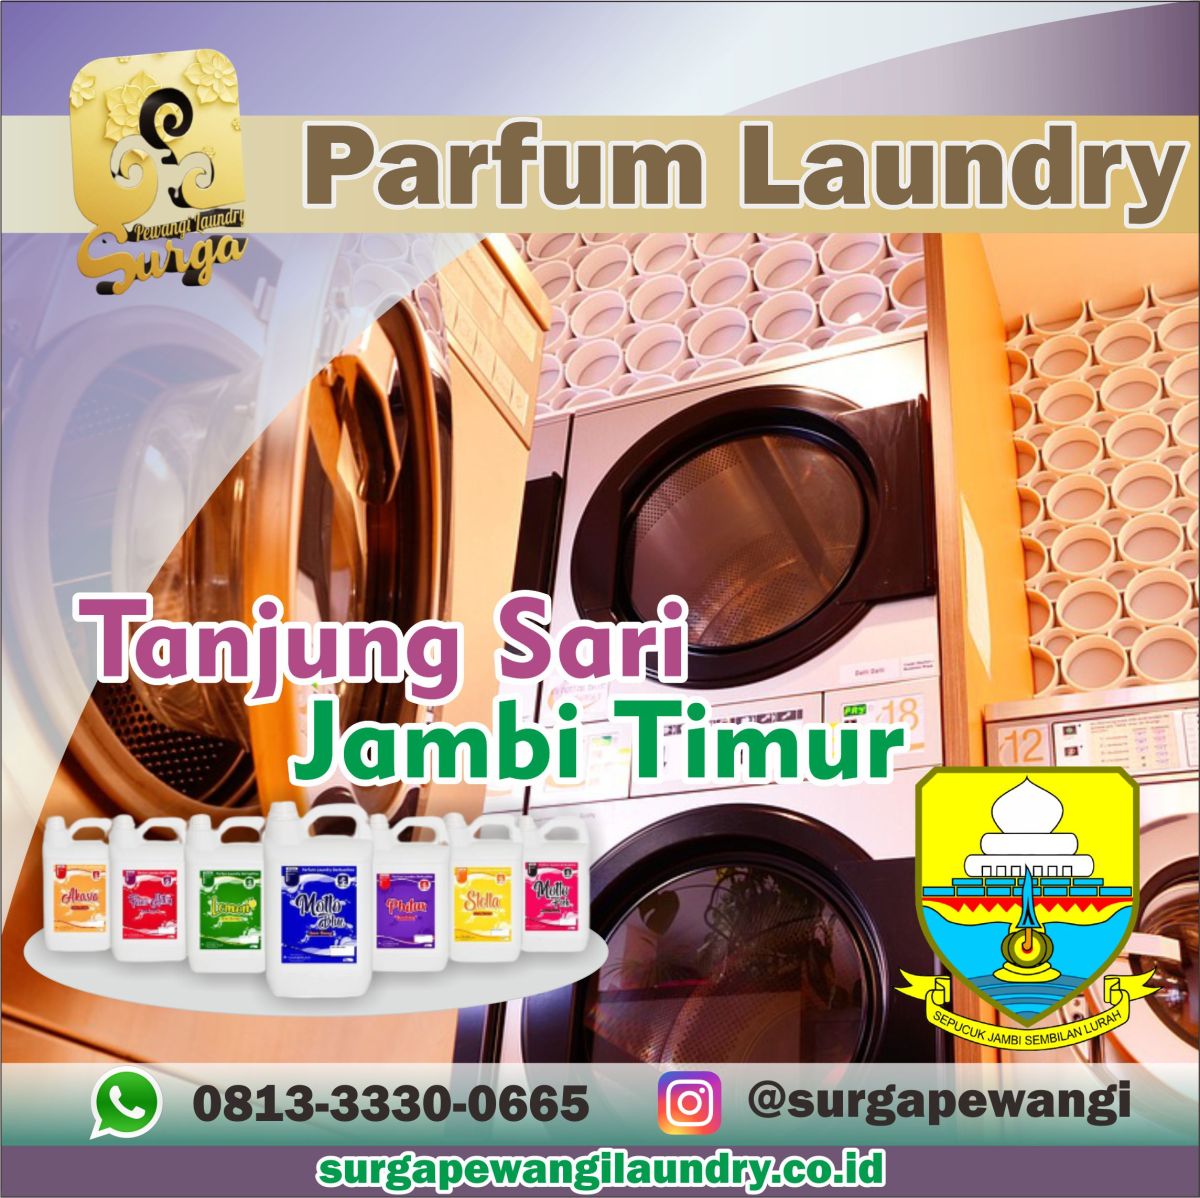 Parfum Laundry Tanjung Sari, Jambi Timur